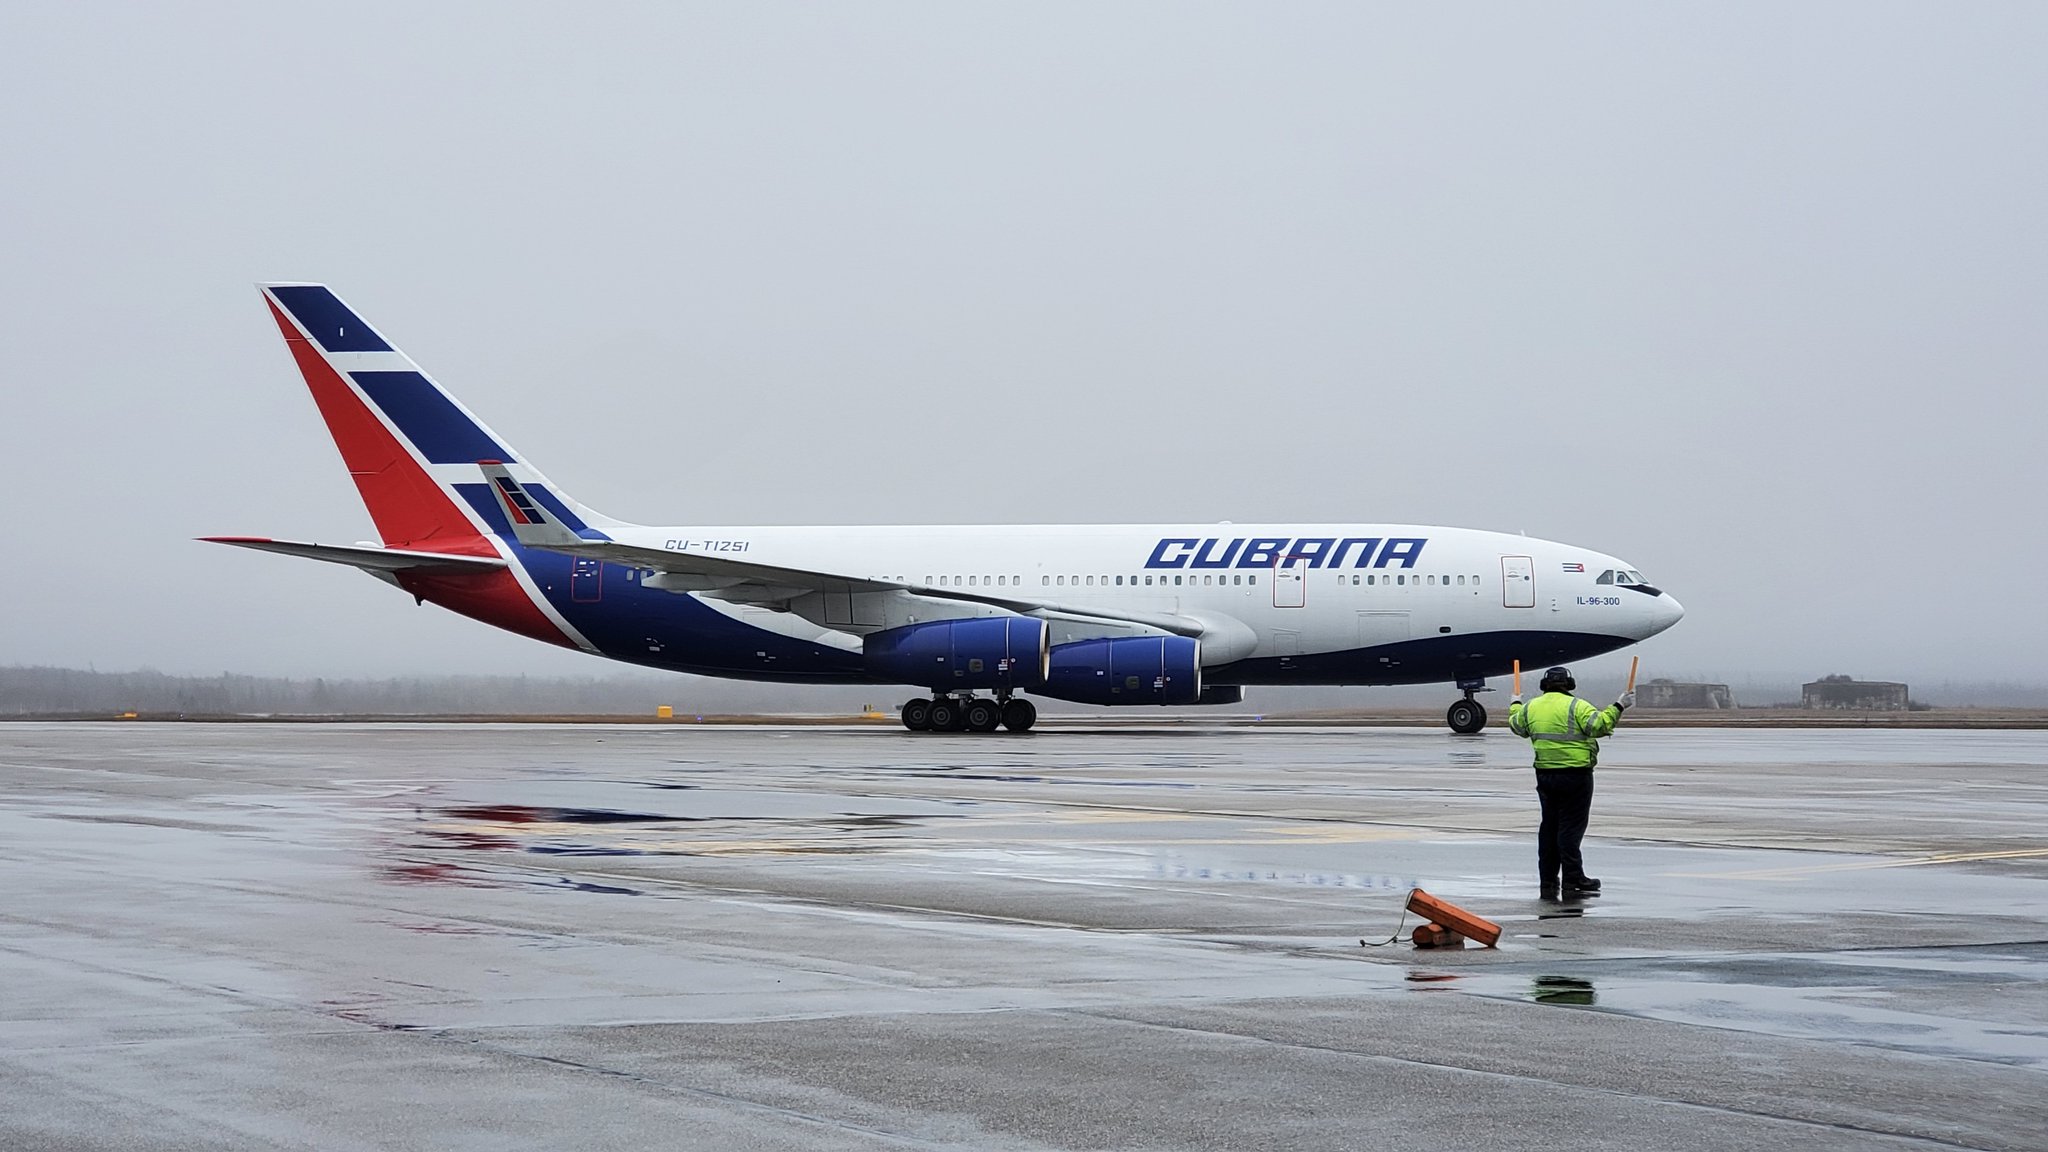 Una mega crisis podría terminar con Cubana de Aviación